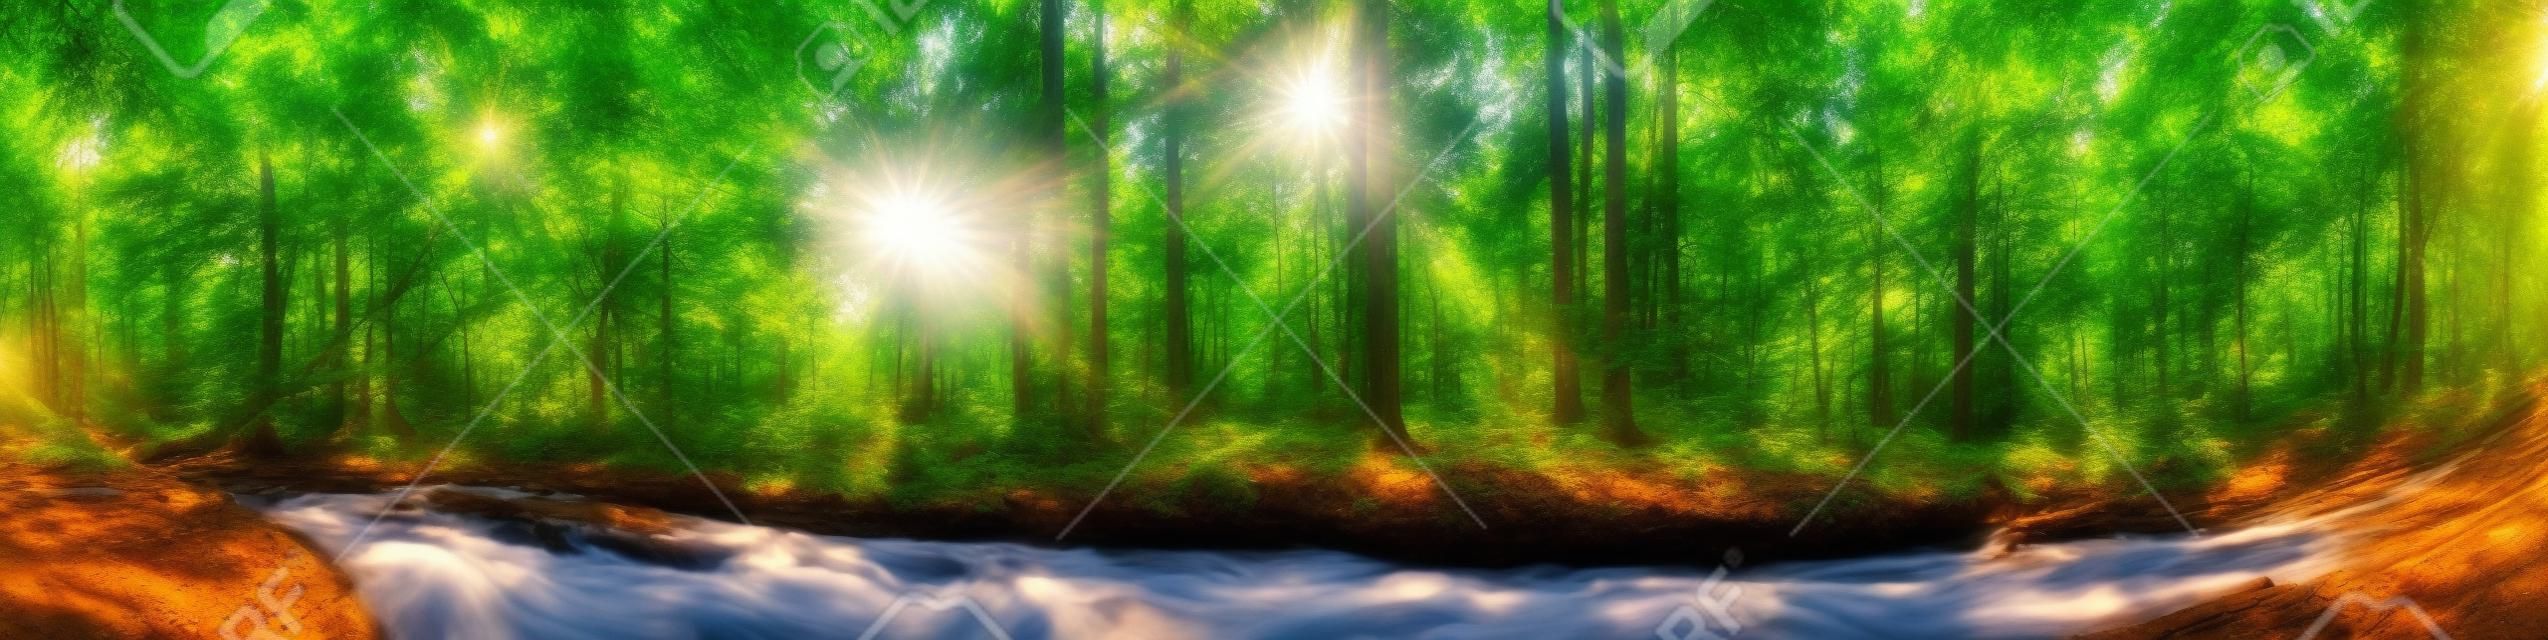 Красивая панорама леса с деревьями, ручей и солнце